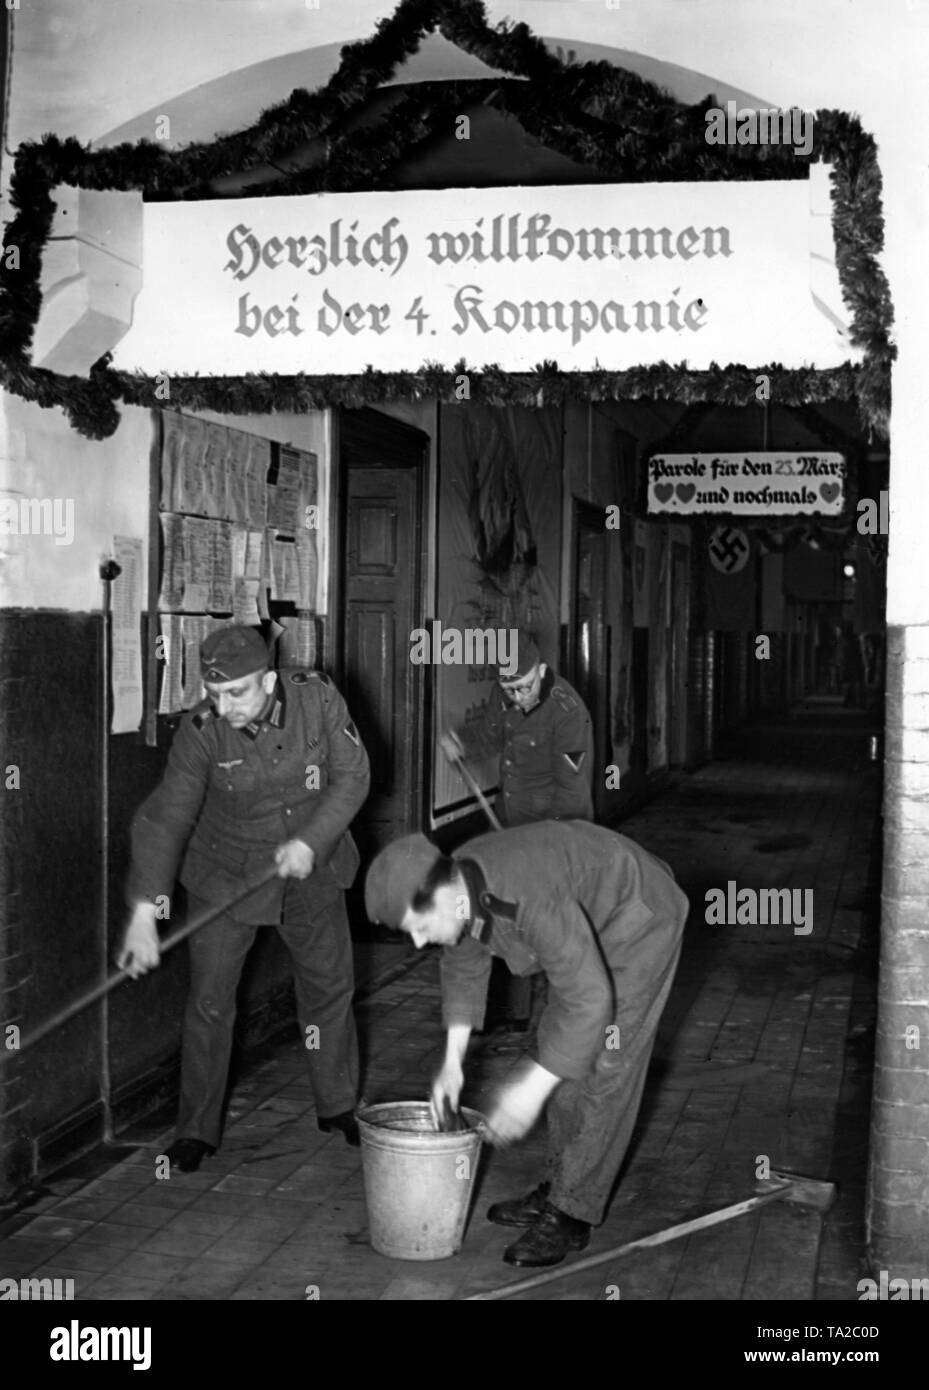 Soldaten der Vierten Unternehmen Clean die Kaserne Zimmer aus Anlass des bevorstehenden Tages der Wehrmacht. Über dem Eingang, ein Banner mit der Aufschrift "Willkommen in der 4. Firma'. Wahrscheinlich in Berlin. Foto: schwahn. Stockfoto